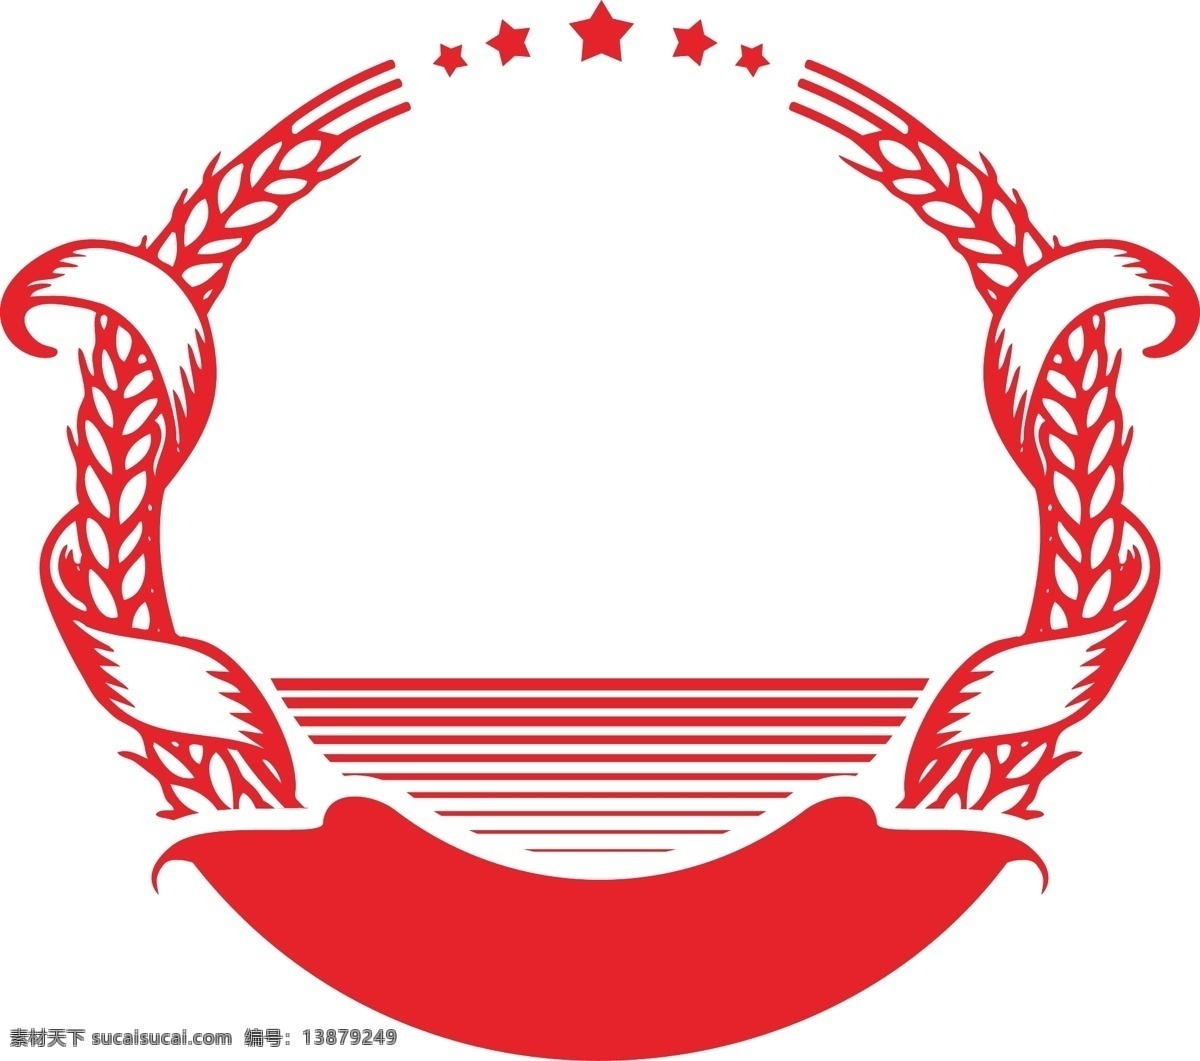 麦穗商标设计 商标设计 麦穗商标 徽章矢量图 logo设计 标志设计 标志图标 企业 logo 标志